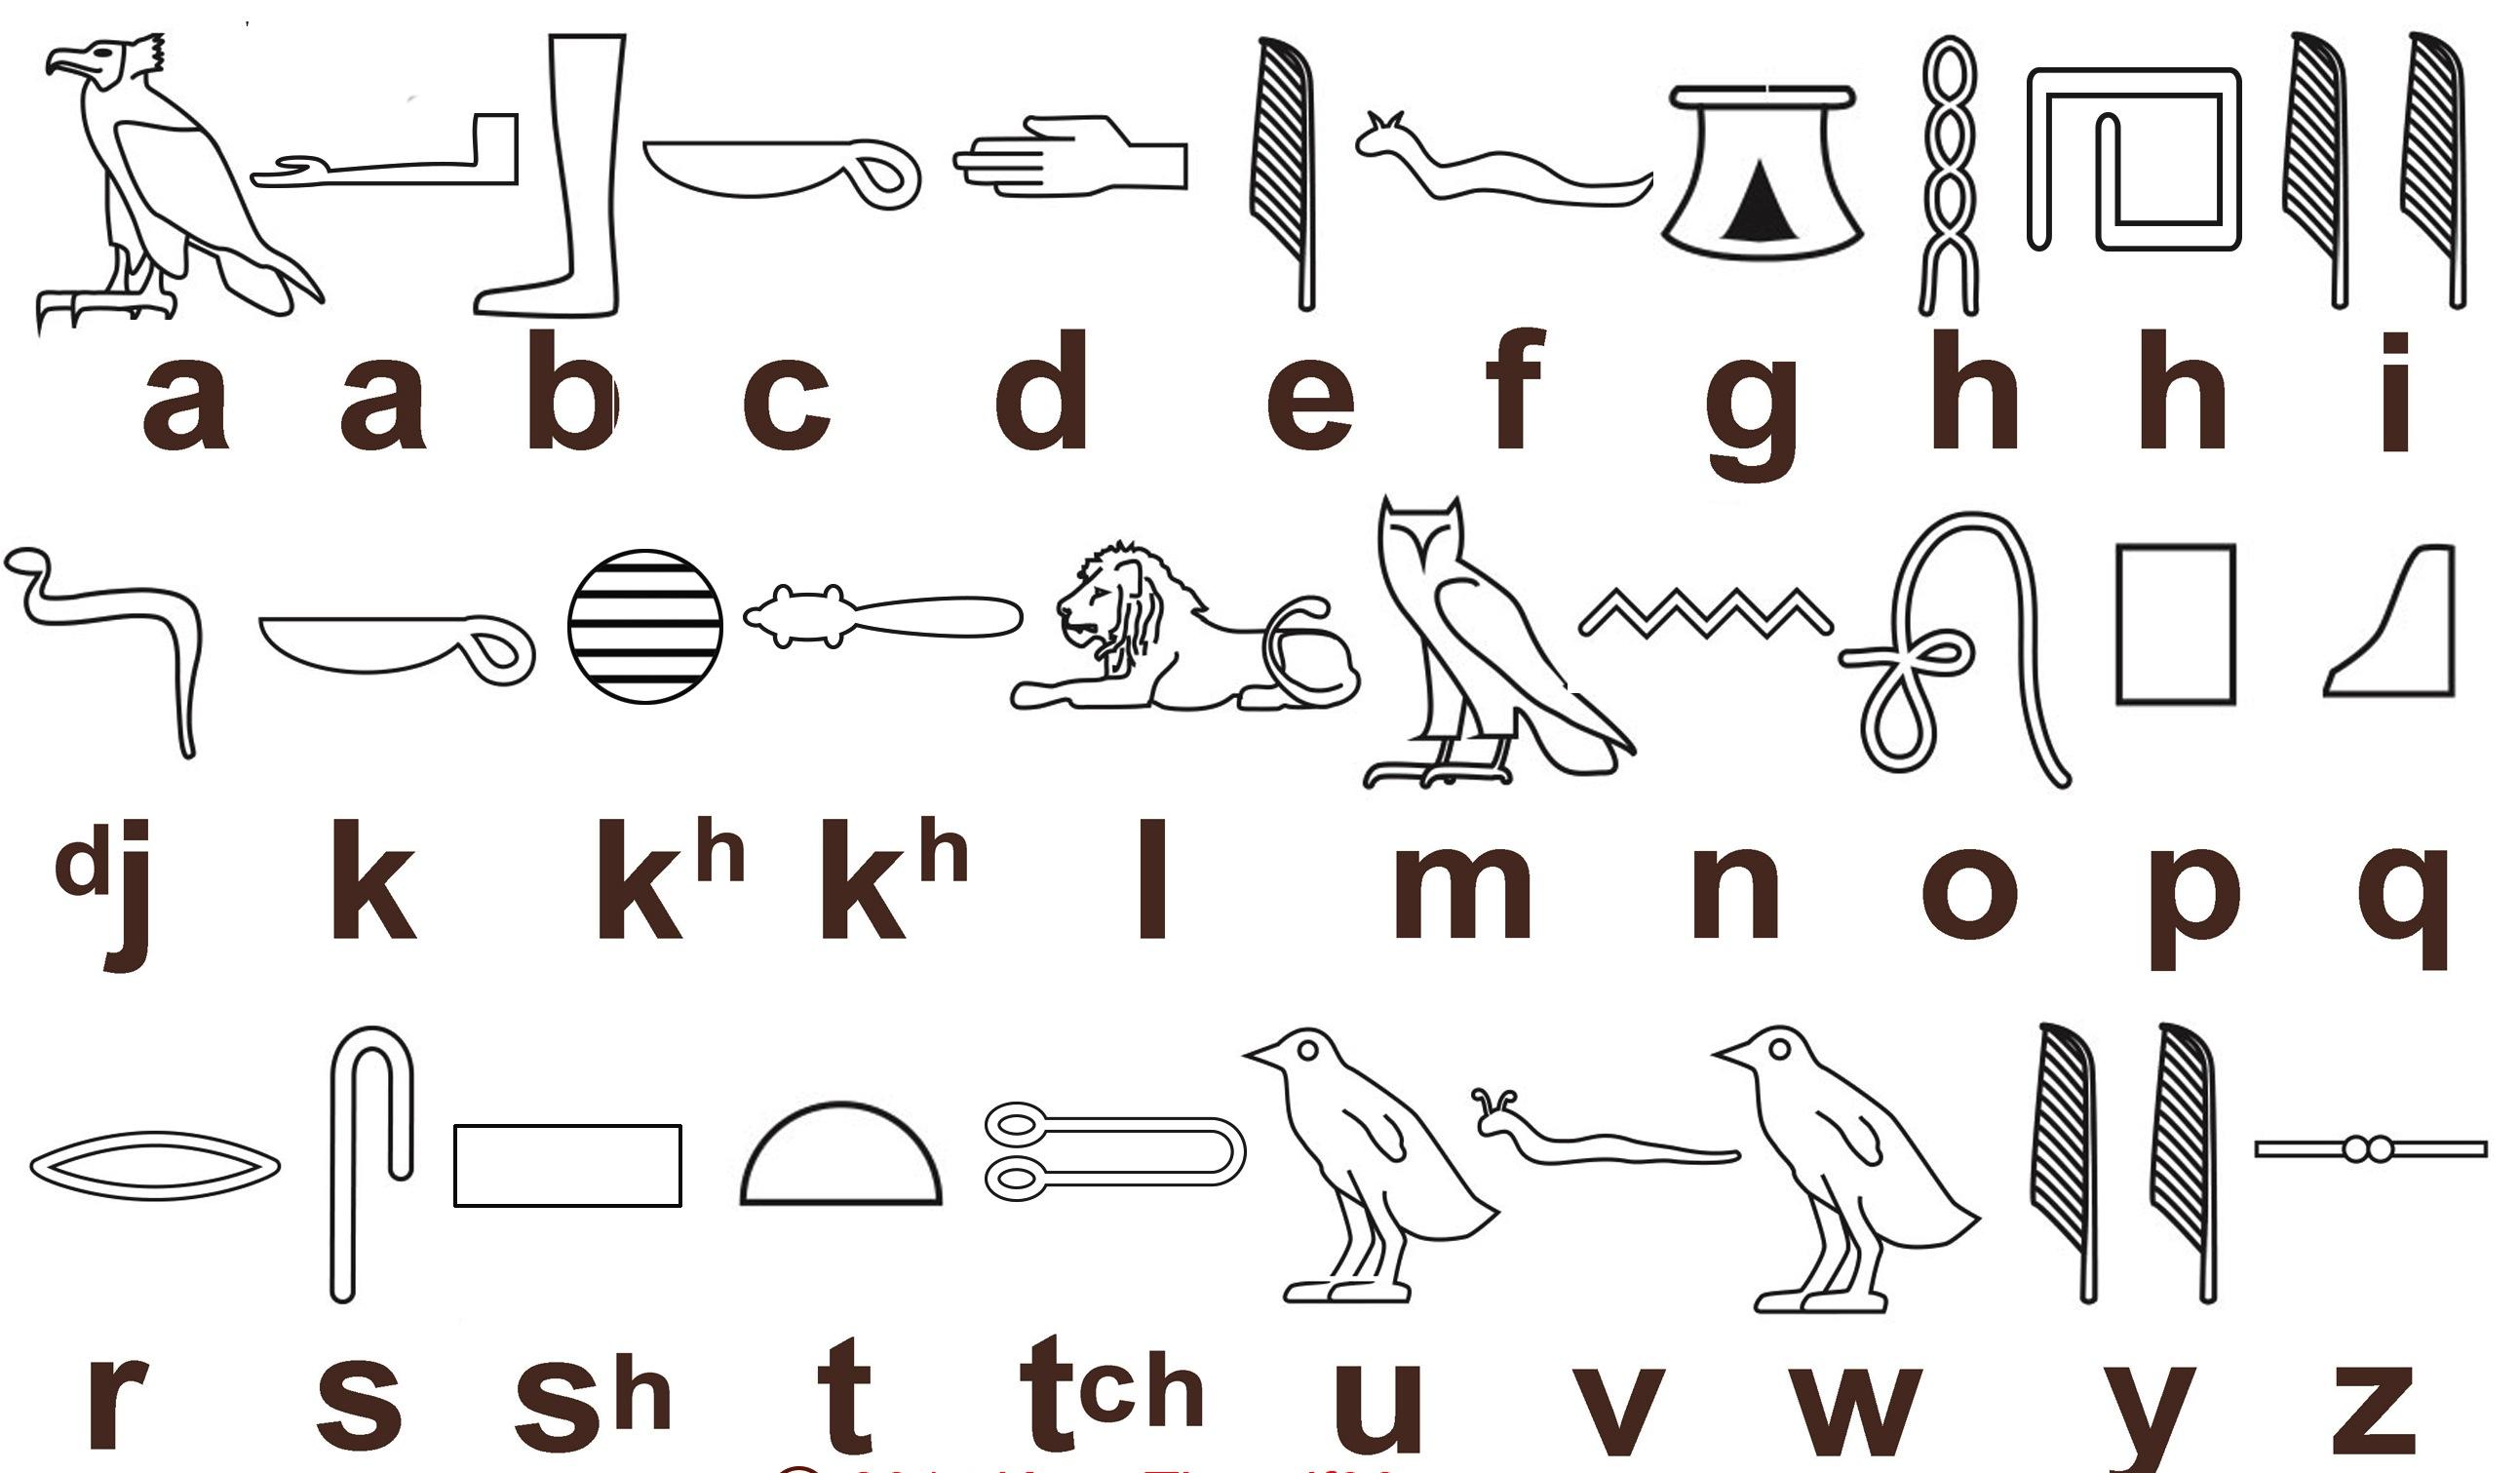 加汀纳埃及象形文字符号对照表 - 知乎